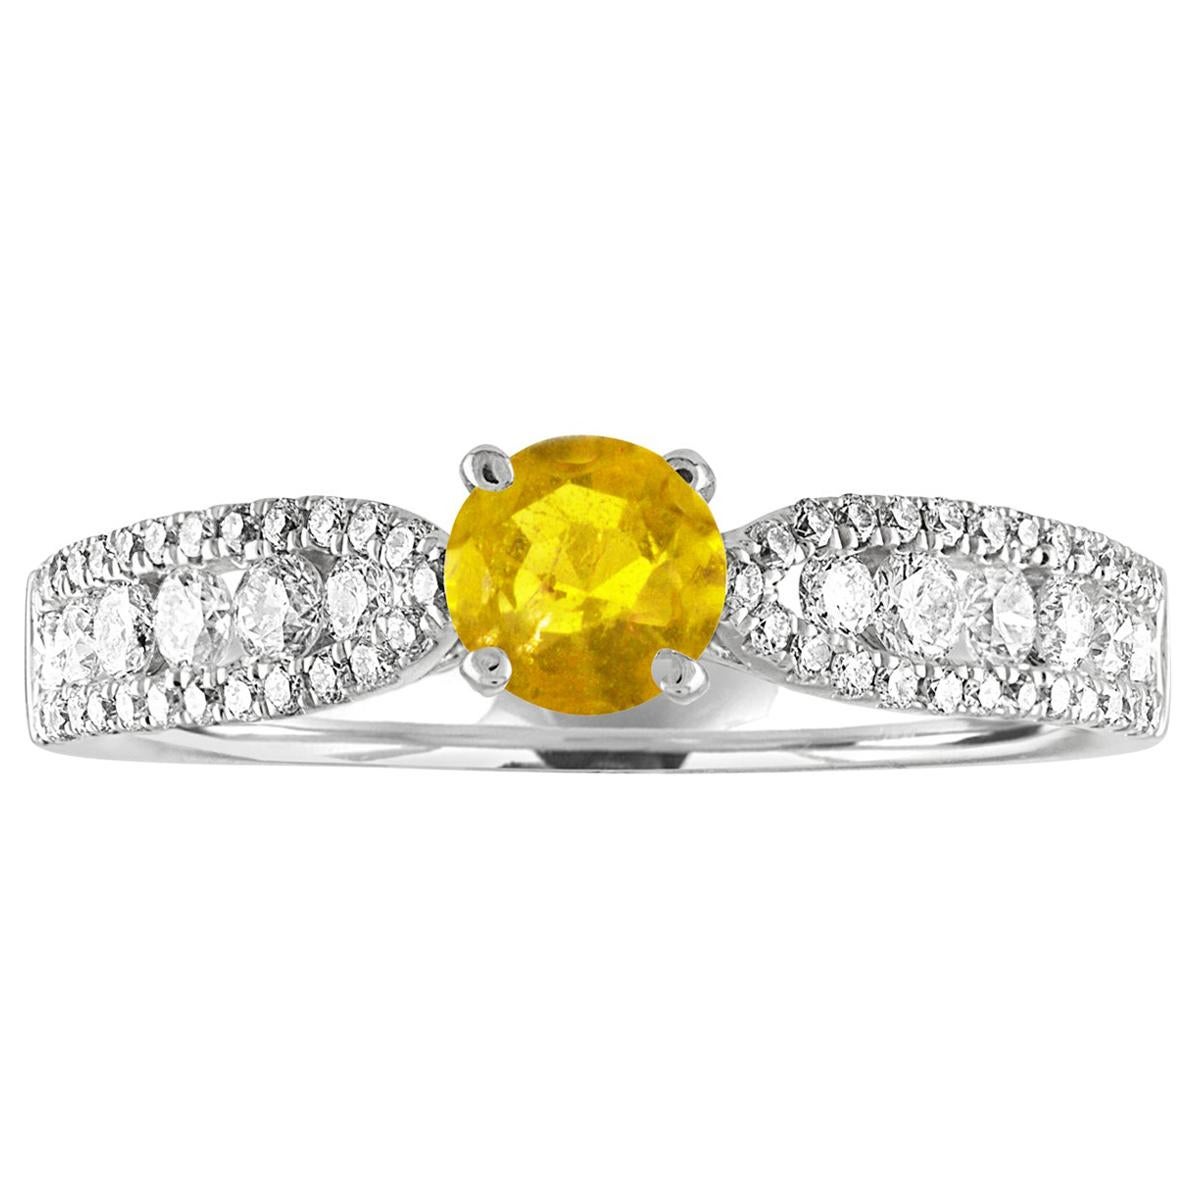 Bague en or avec diamants et saphir jaune de 0,42 carat certifié AGL